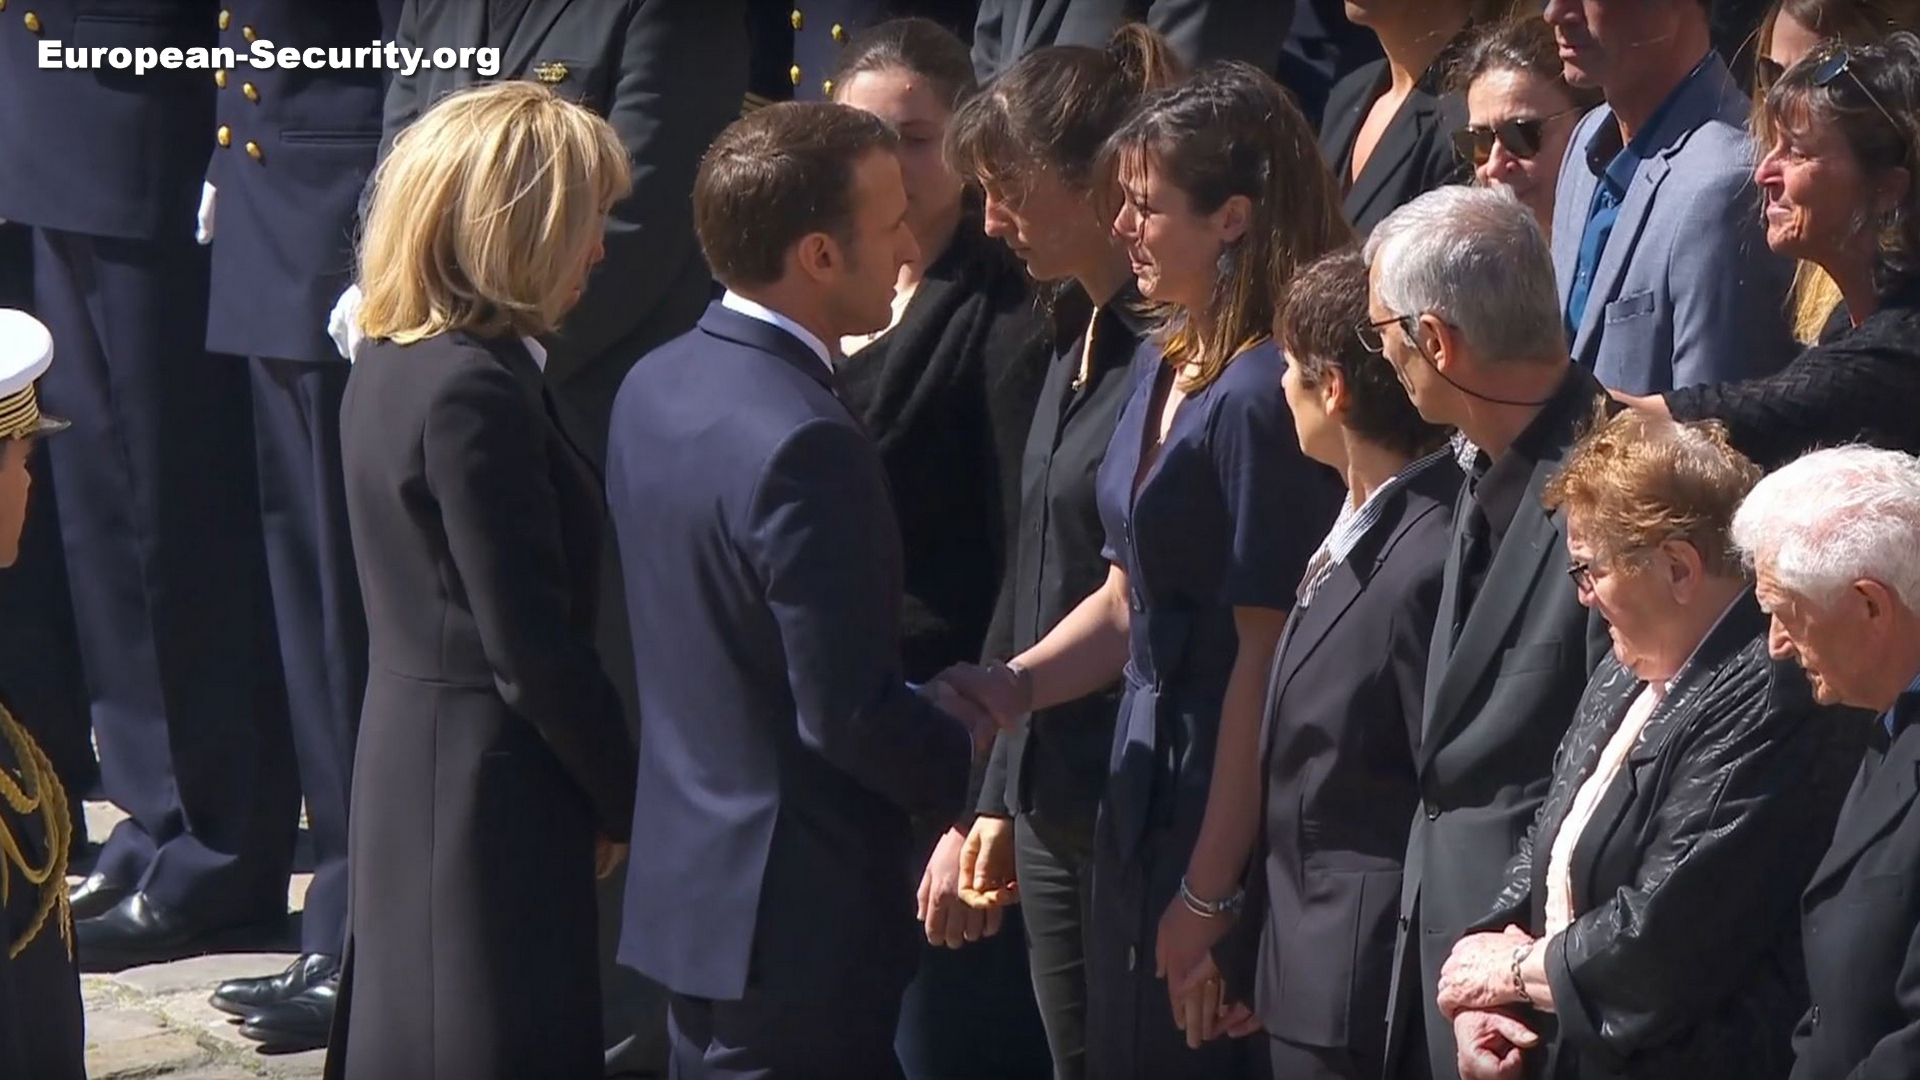 Le Président Macron et son épouse présentent leurs condoléances aux familles -- Photo European-Security. -